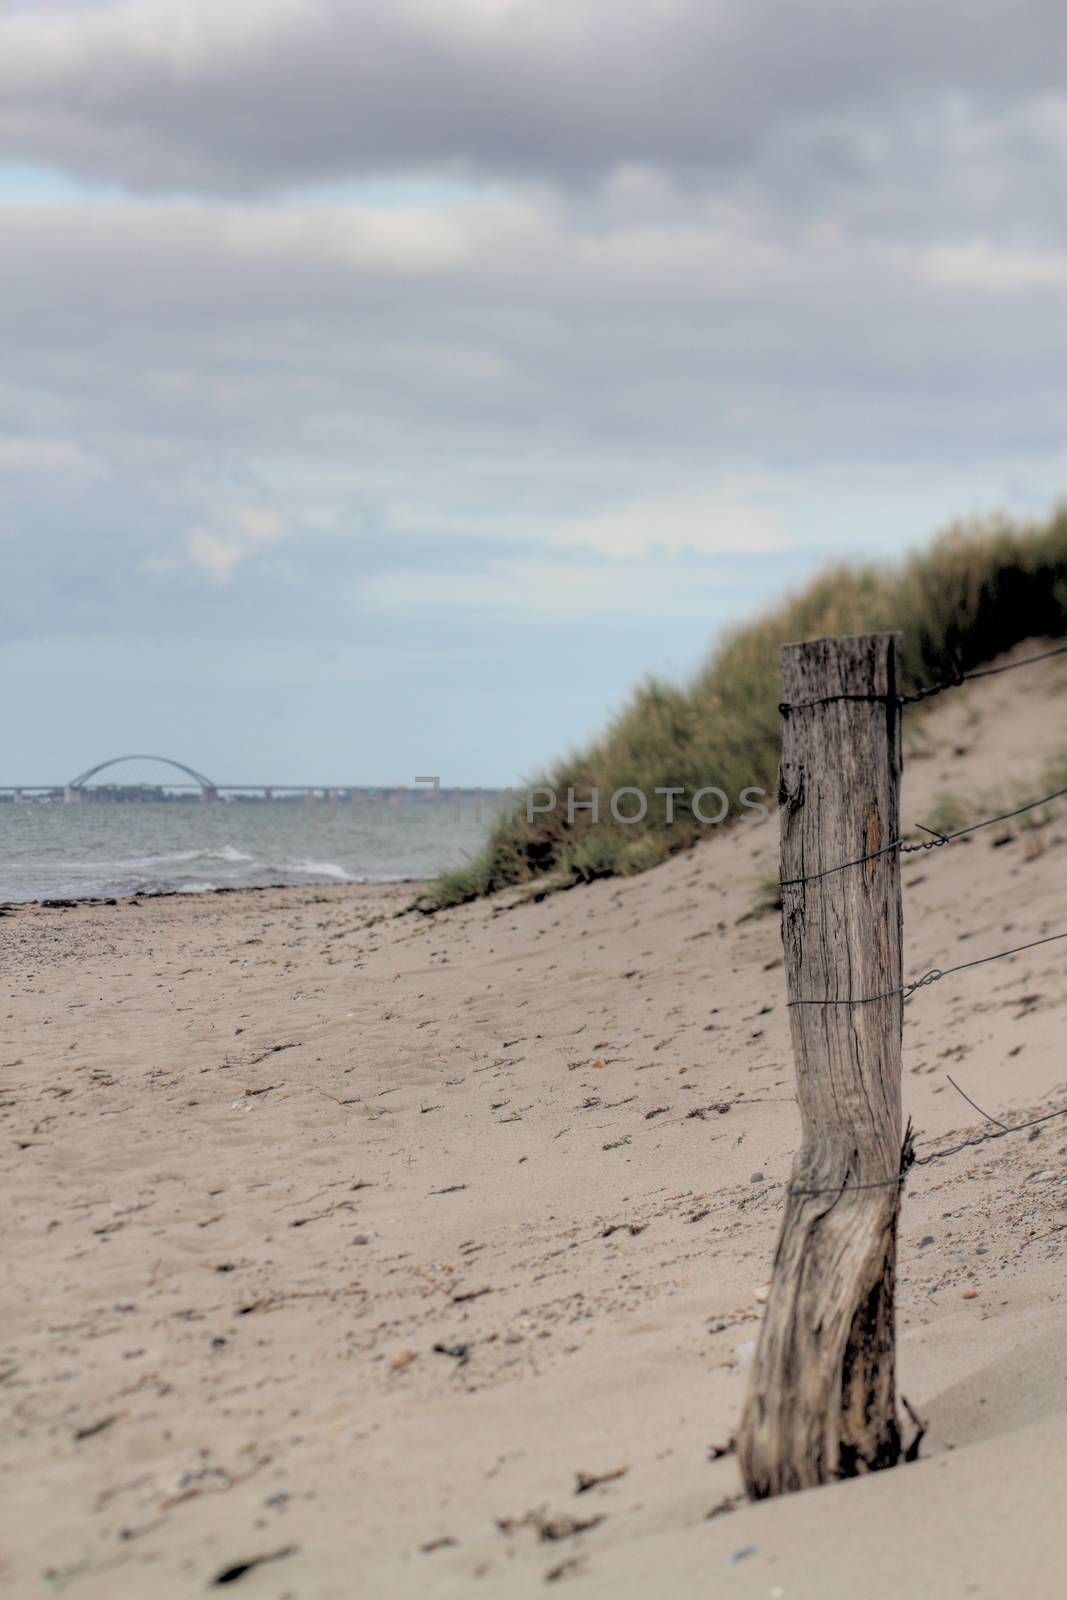 coastal dune by derausdo